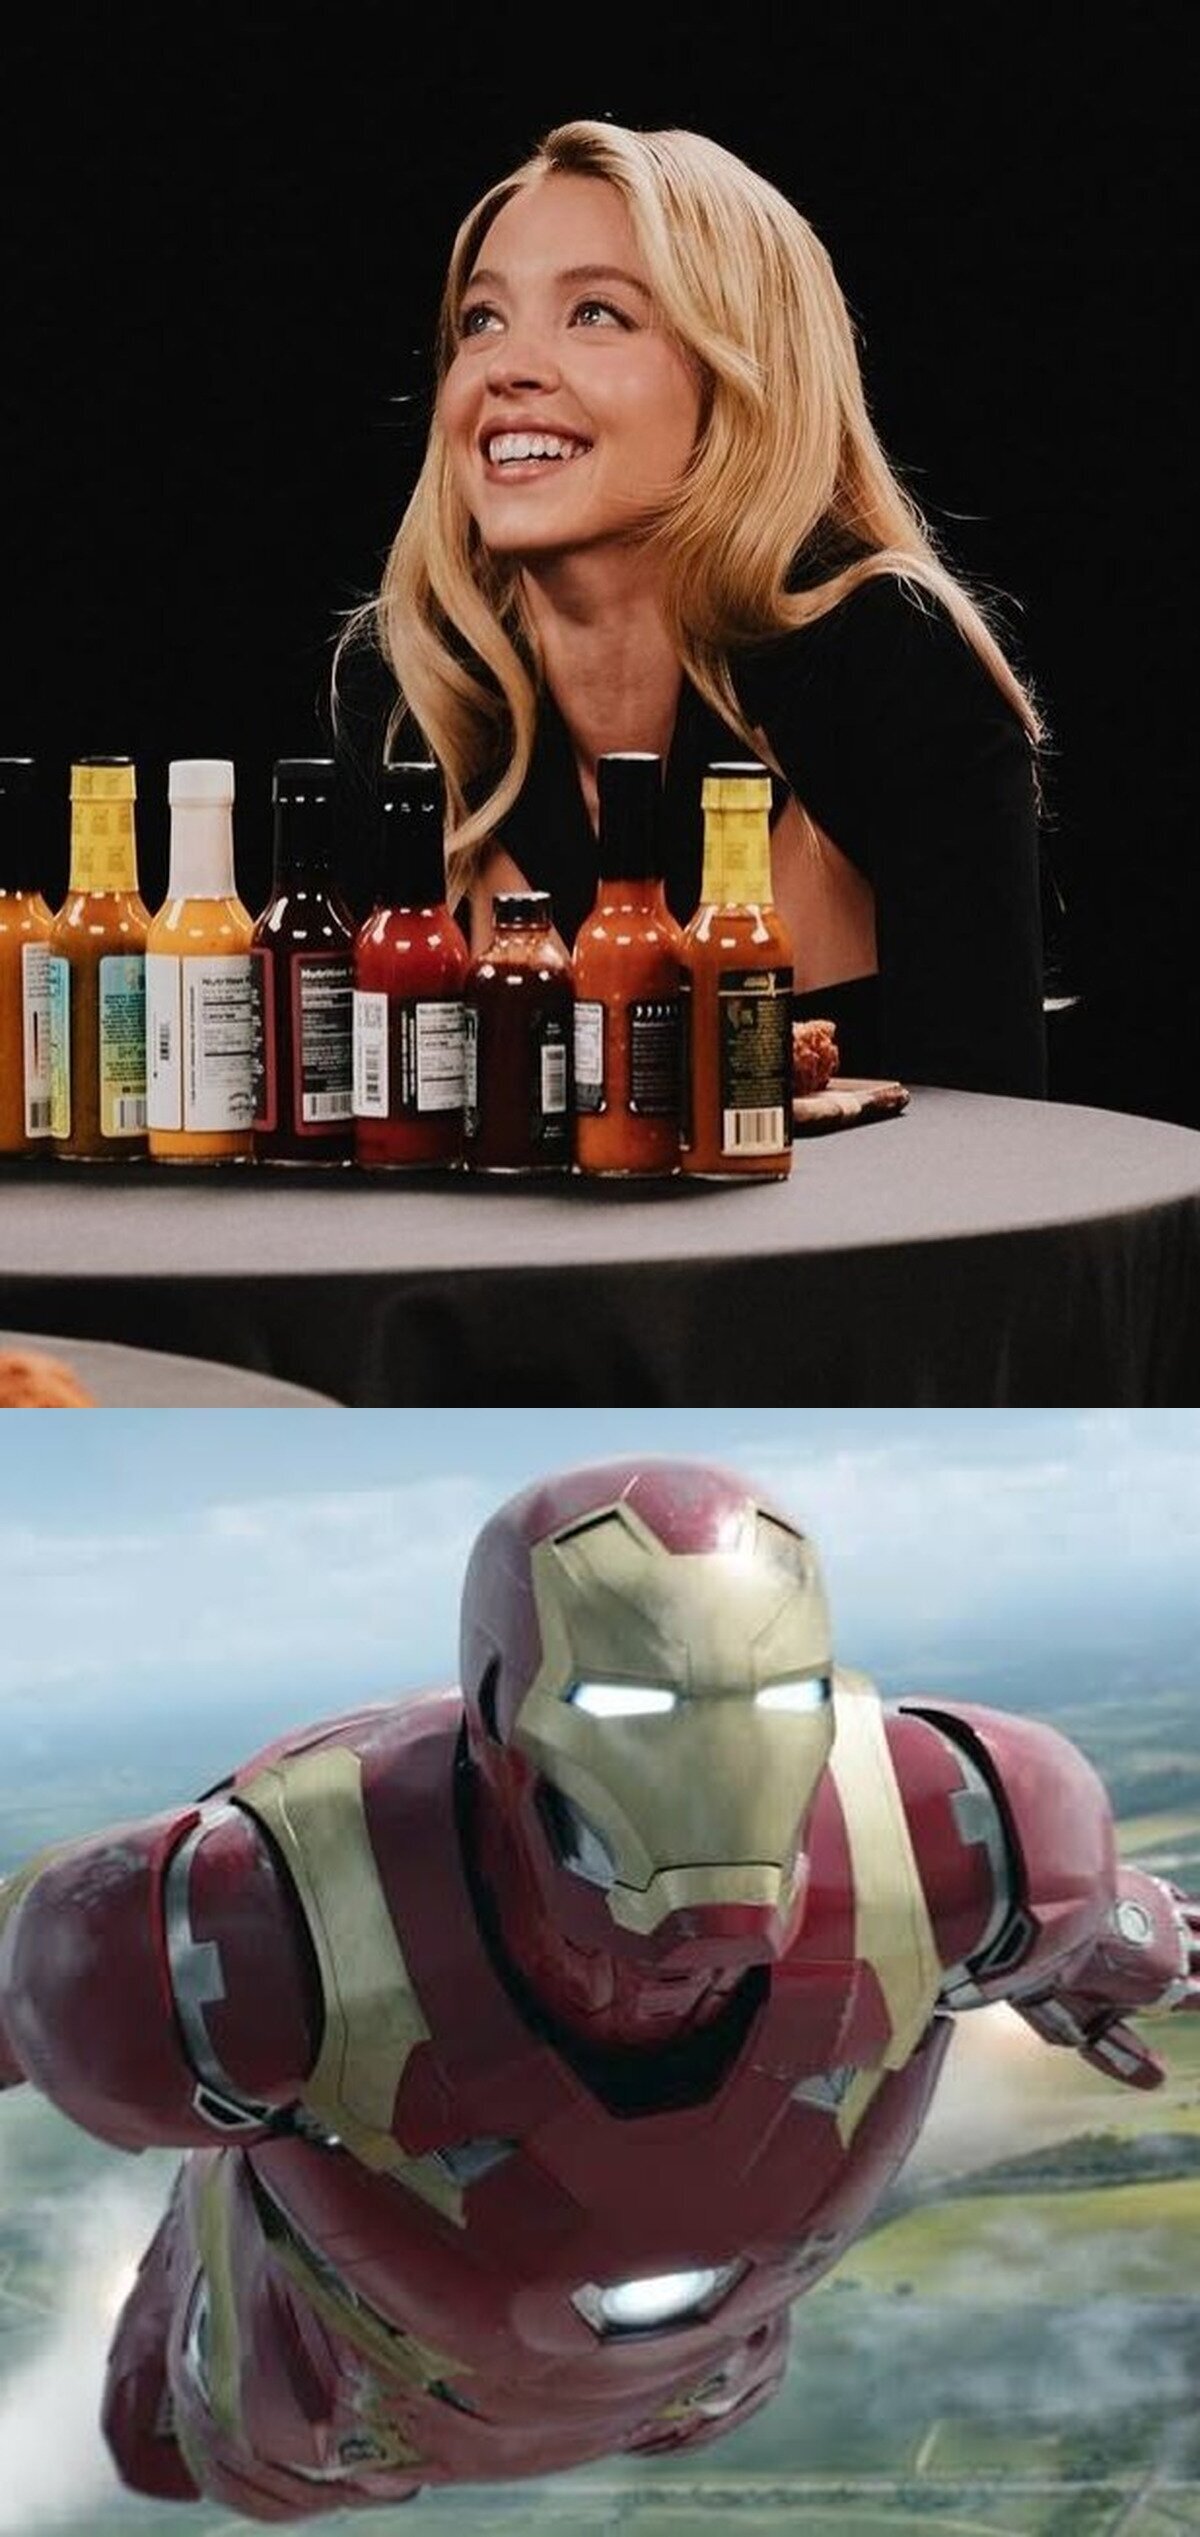 Que preferirías...¿Casarte con Sydney Sweeney o el traje de Iron Man?